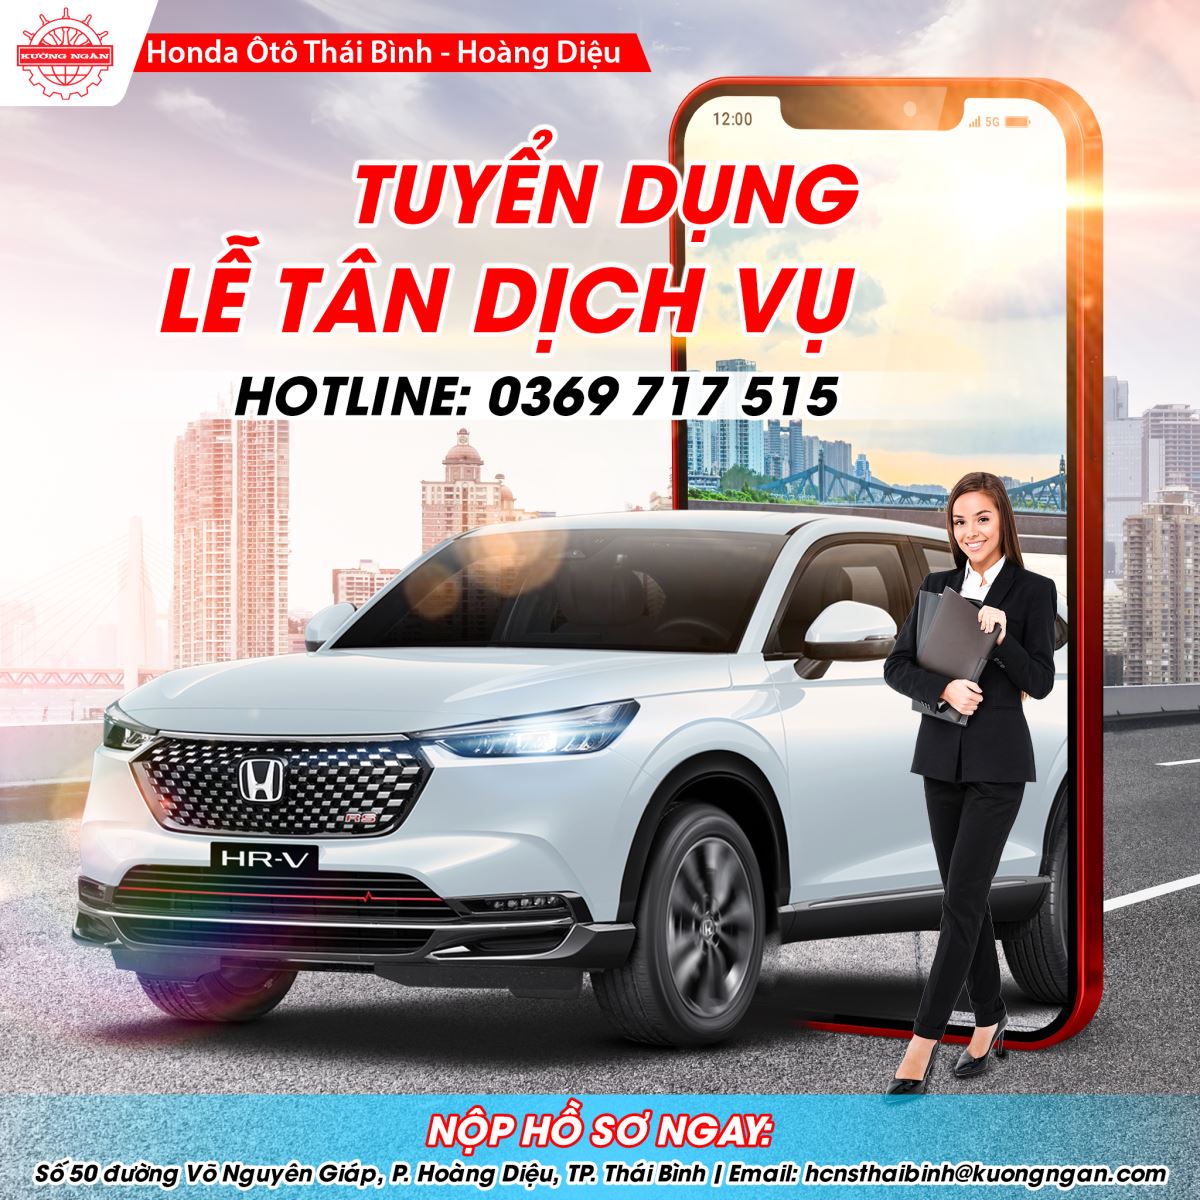 Honda Ôtô Thái Bình - Hoàng Diệu tuyển dụng Lễ tân Dịch vụ tháng 9/2022